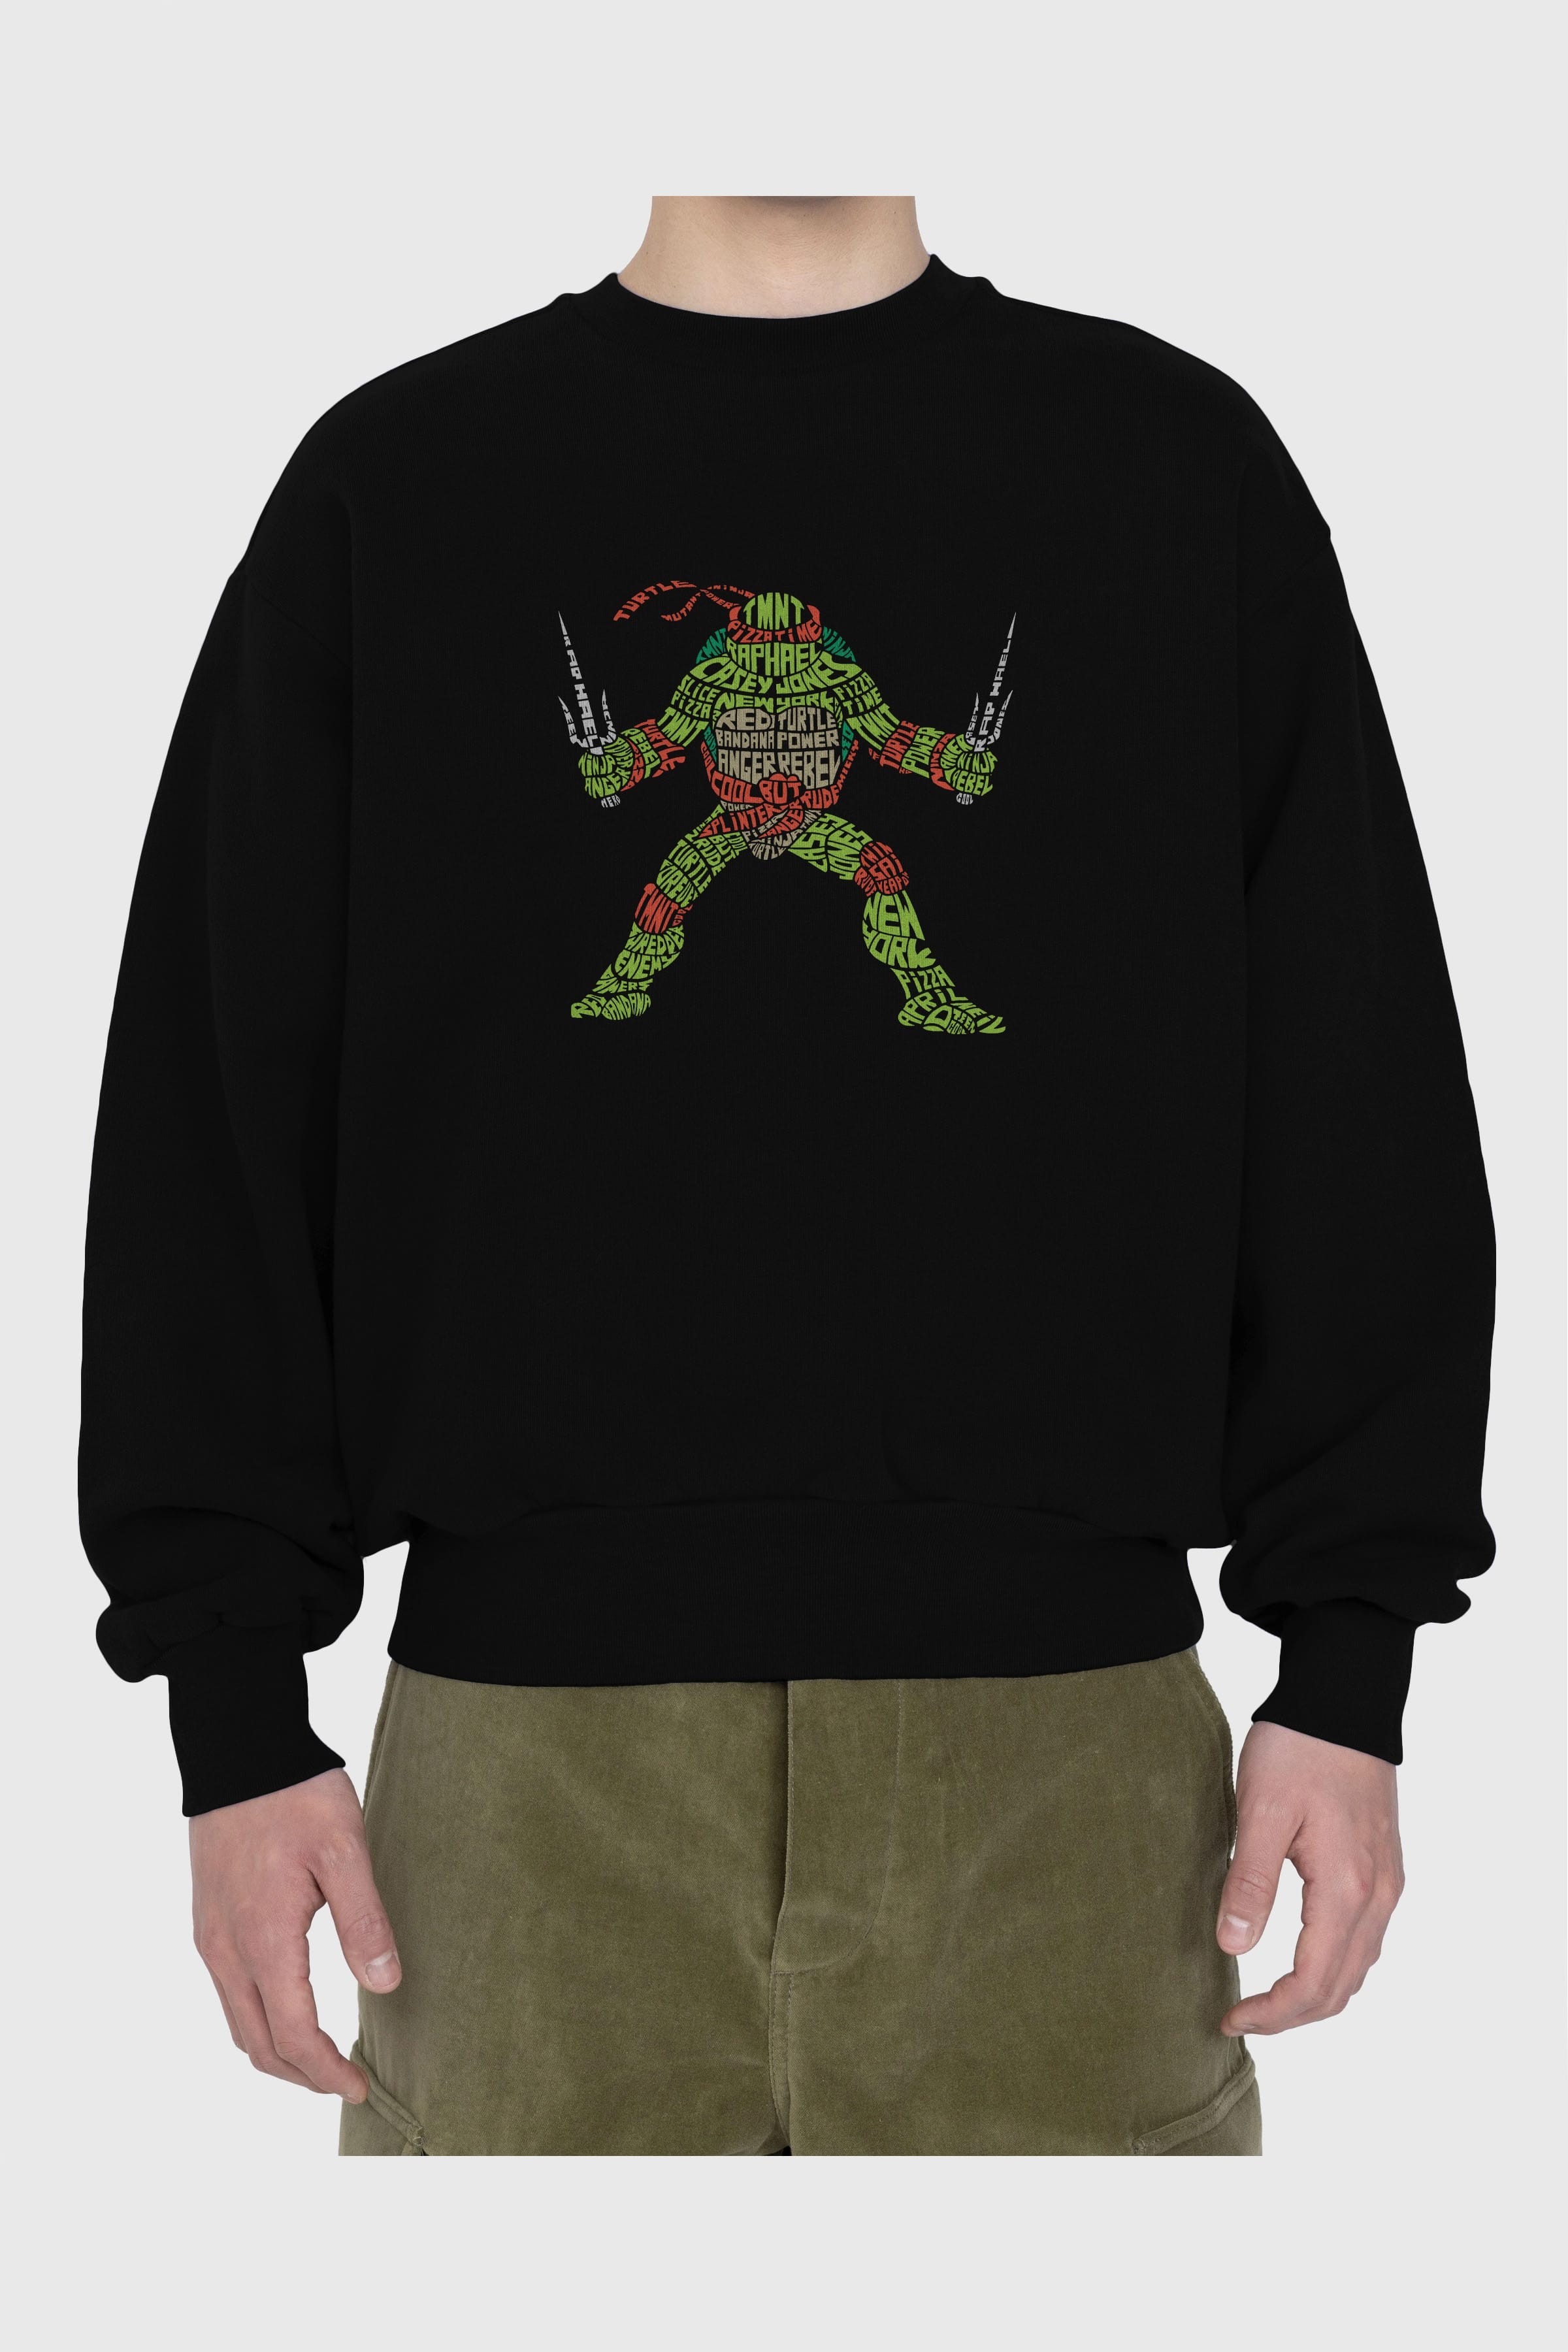 Ninja Turtle Ön Baskılı Oversize Sweatshirt Erkek Kadın Unisex